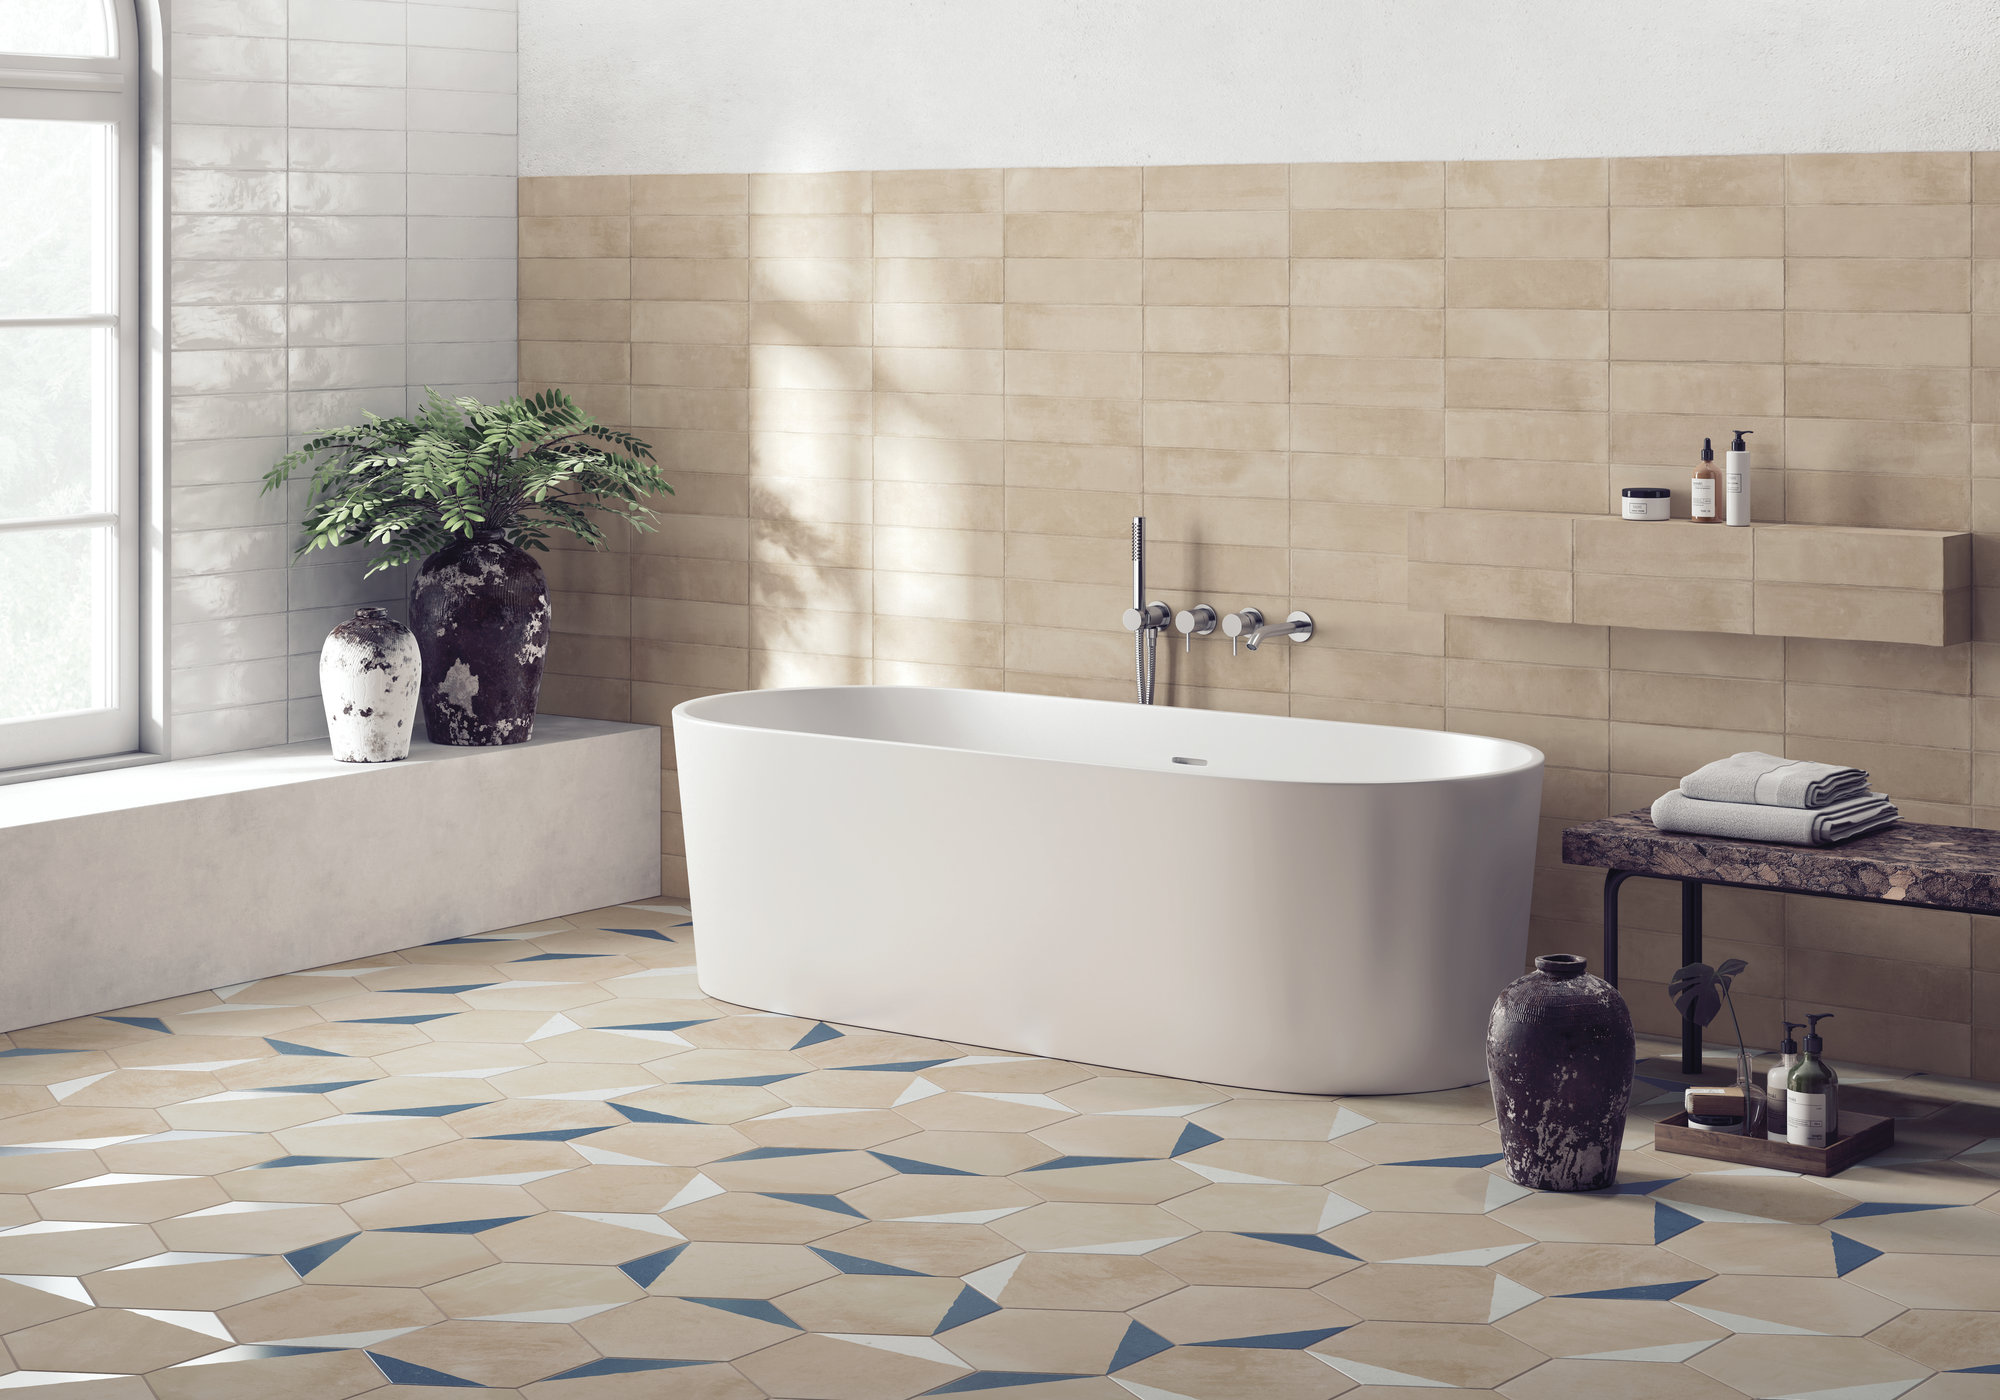 Łazienka wyłożona beżowymi płytkami heksagonalnymi z kolorowymi akcentami na podłodze oraz beżowymi i białymi cegiełkami ściennymi, z białą wanną wolnostojącą, kamiennymi dzbanami i ławą, ręcznikami i kosmetykami